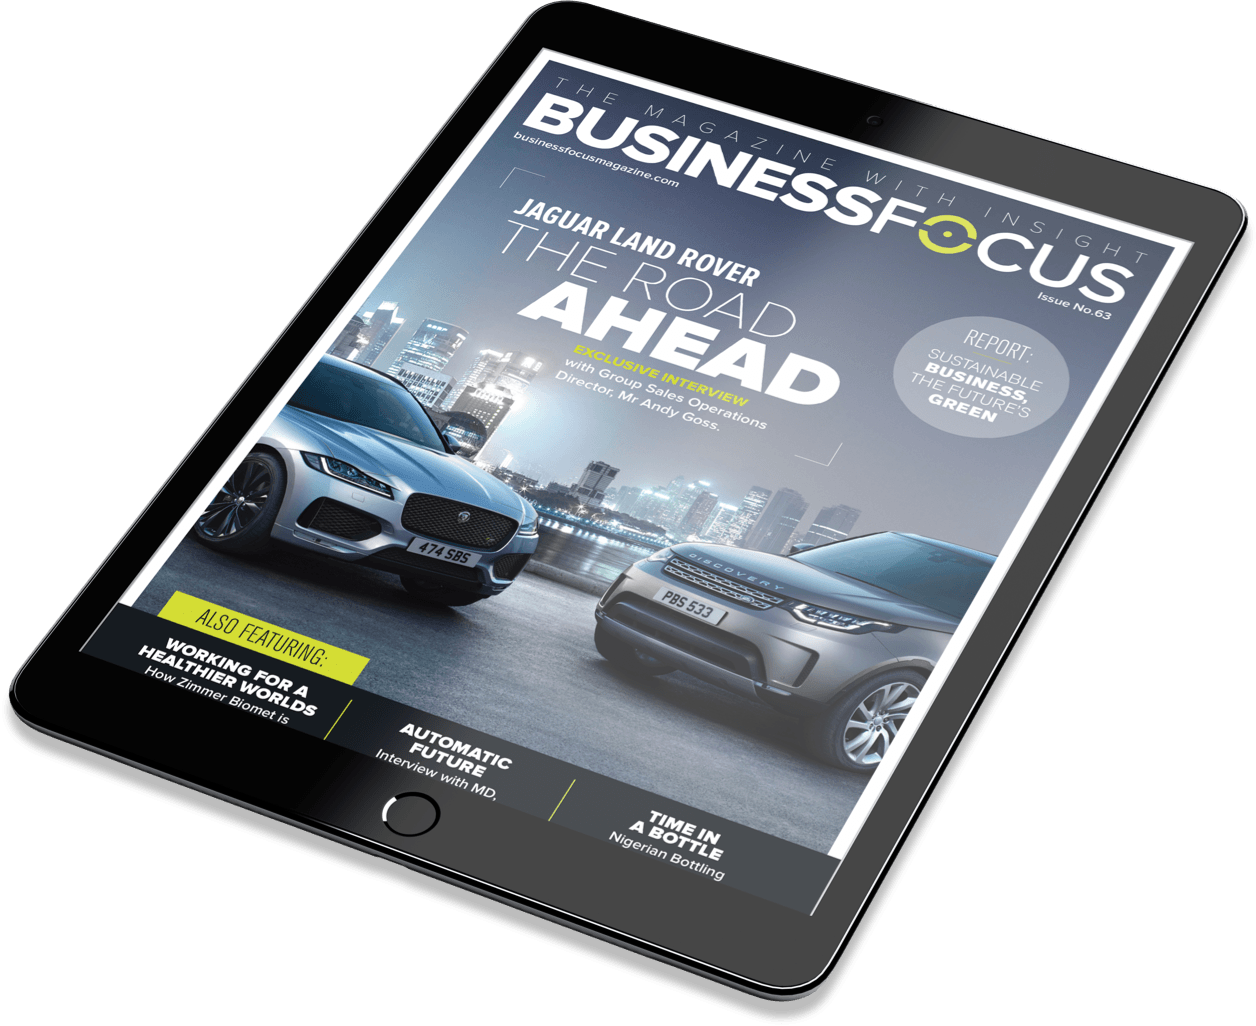 Business Focus Magazines